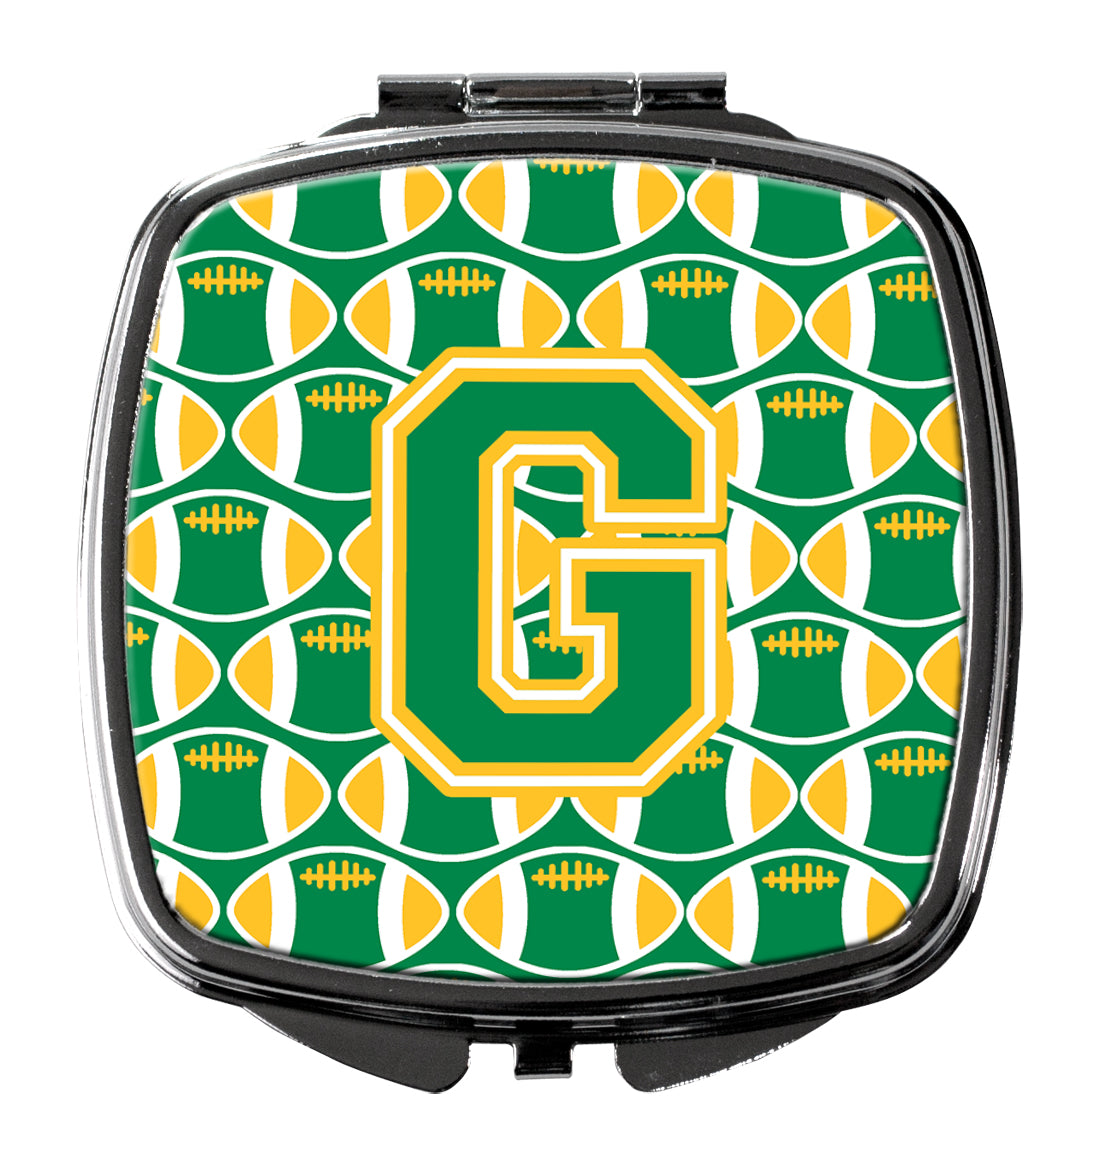 Miroir compact lettre G football vert et or CJ1069-GSCM